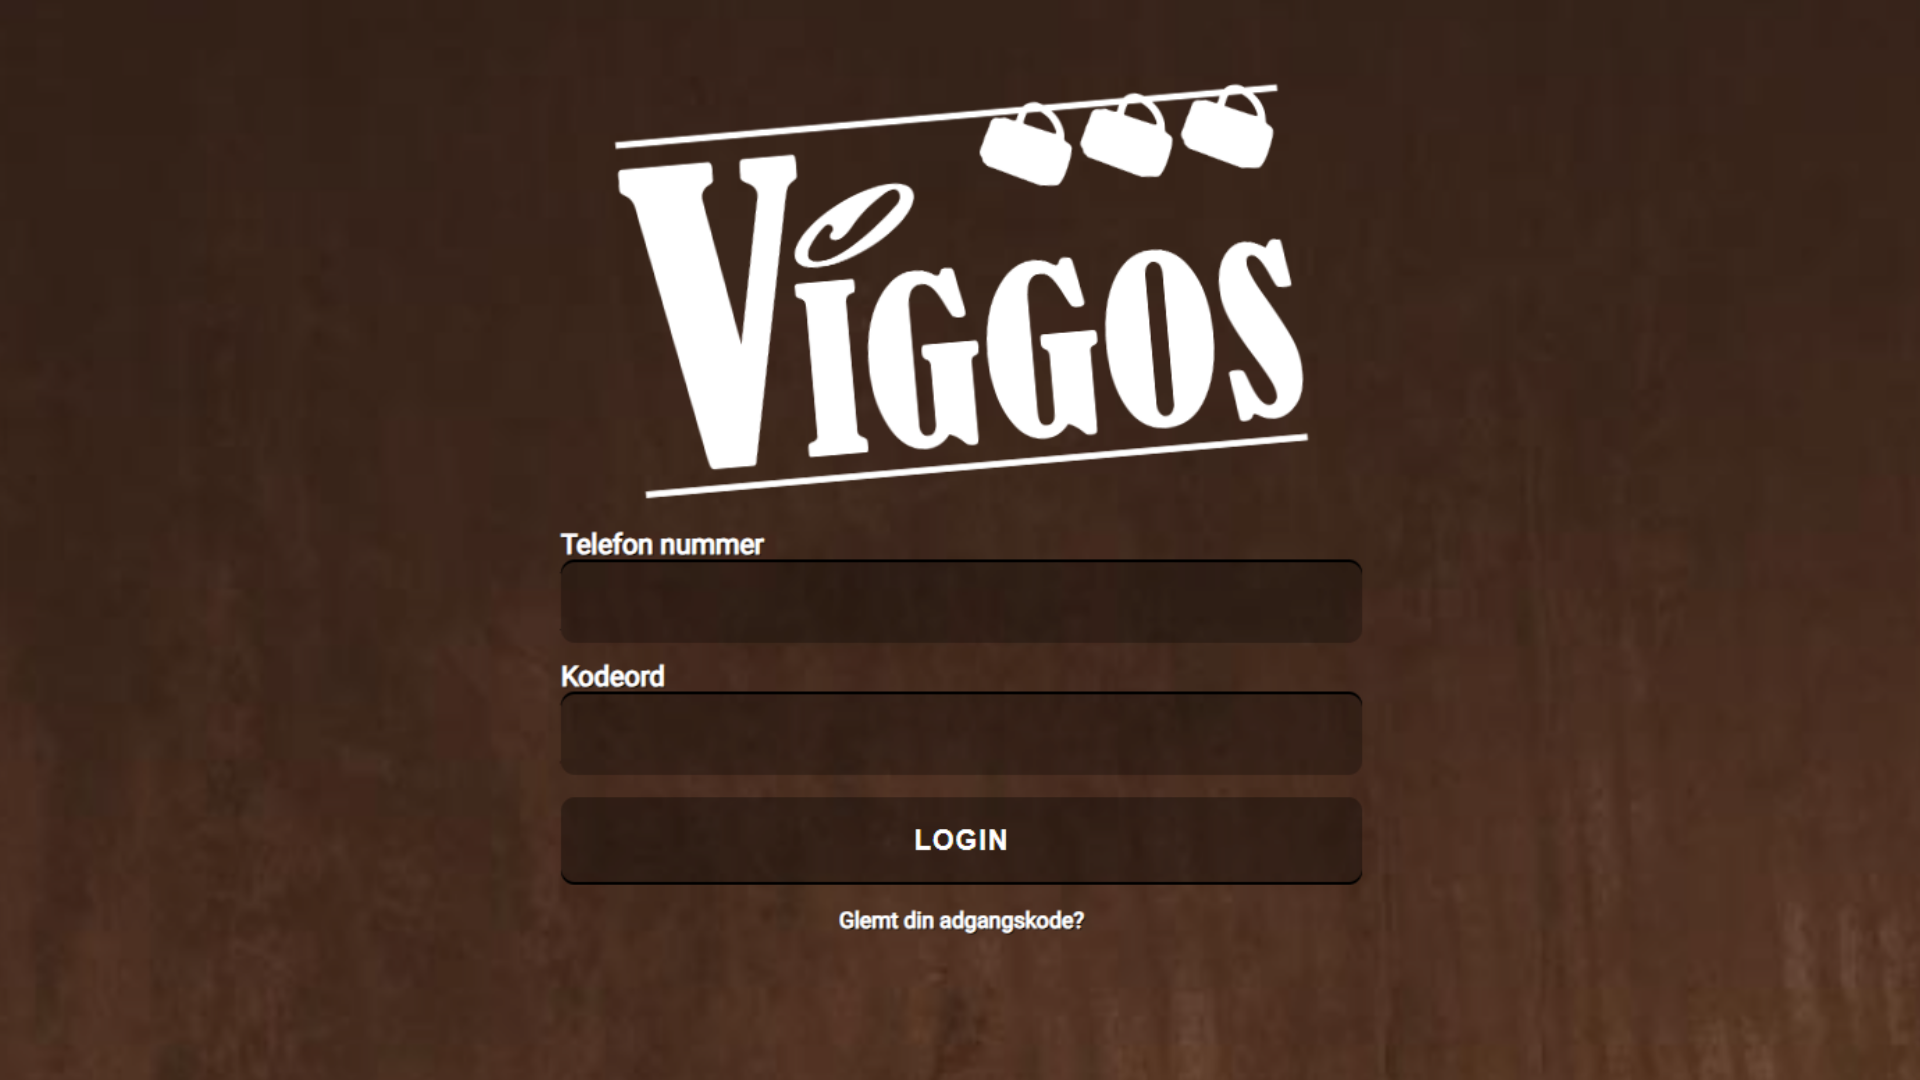 Viggos App